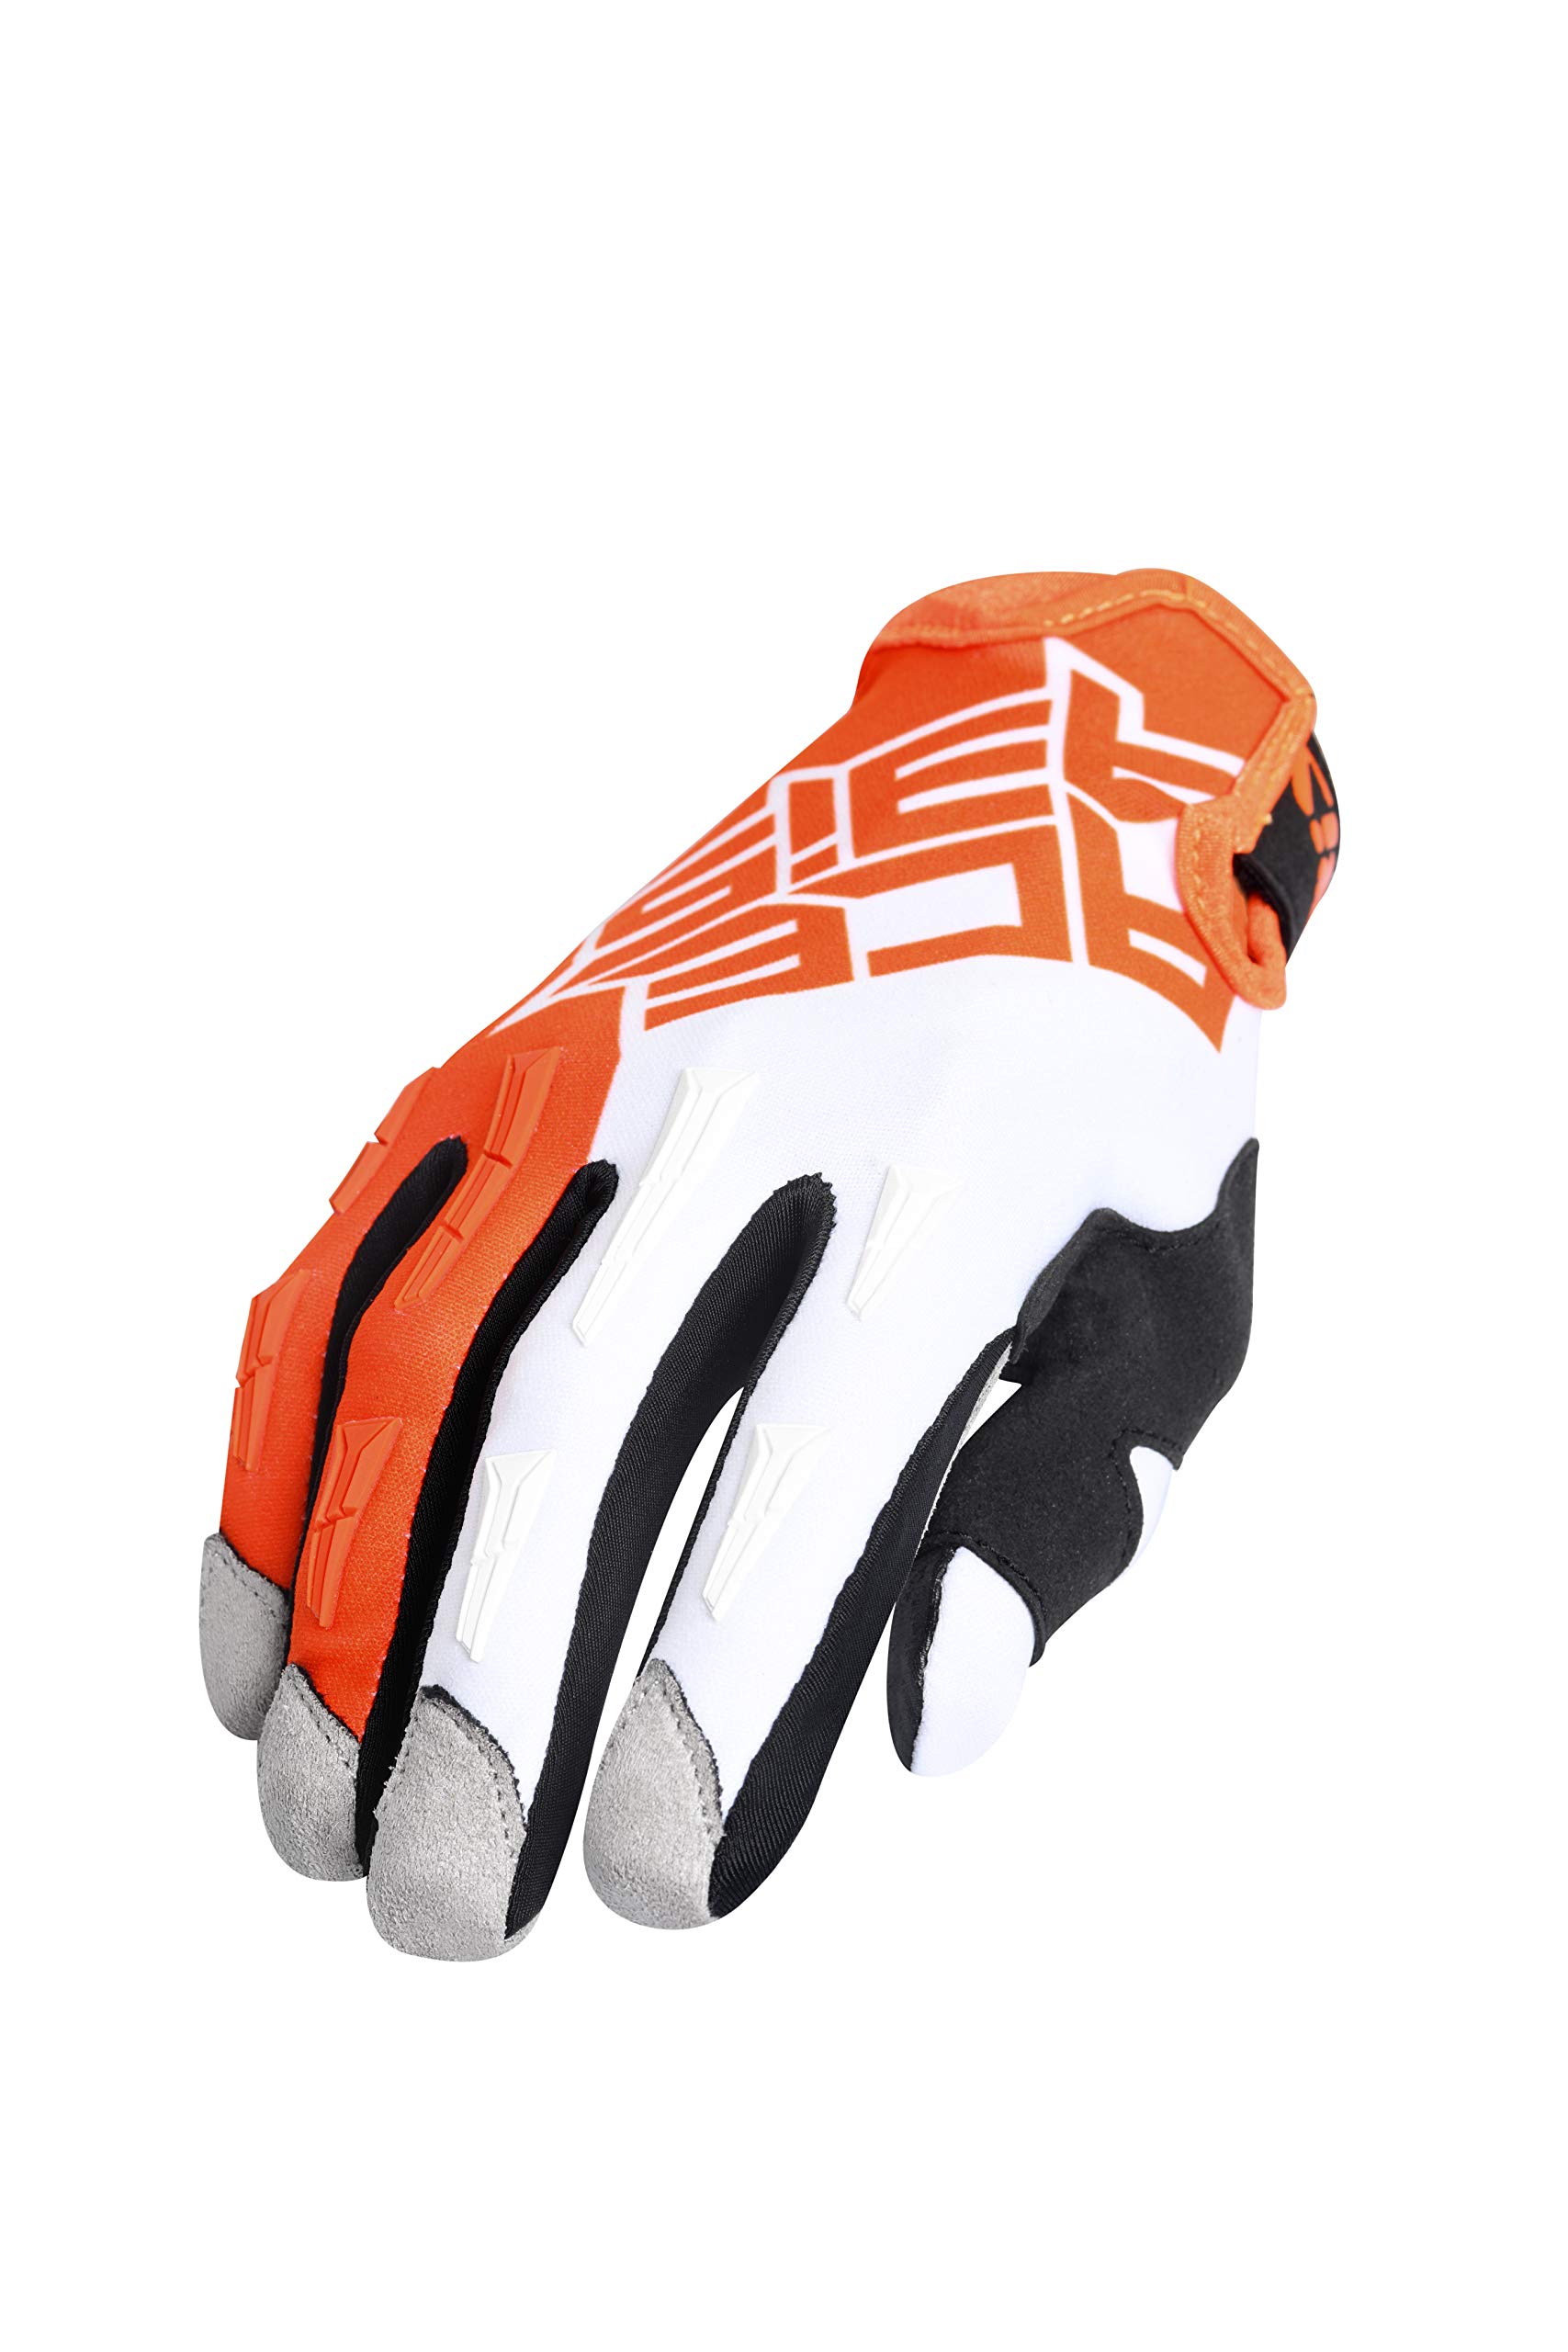 Handschuhe MX X-H orange/weiß XL von Acerbis